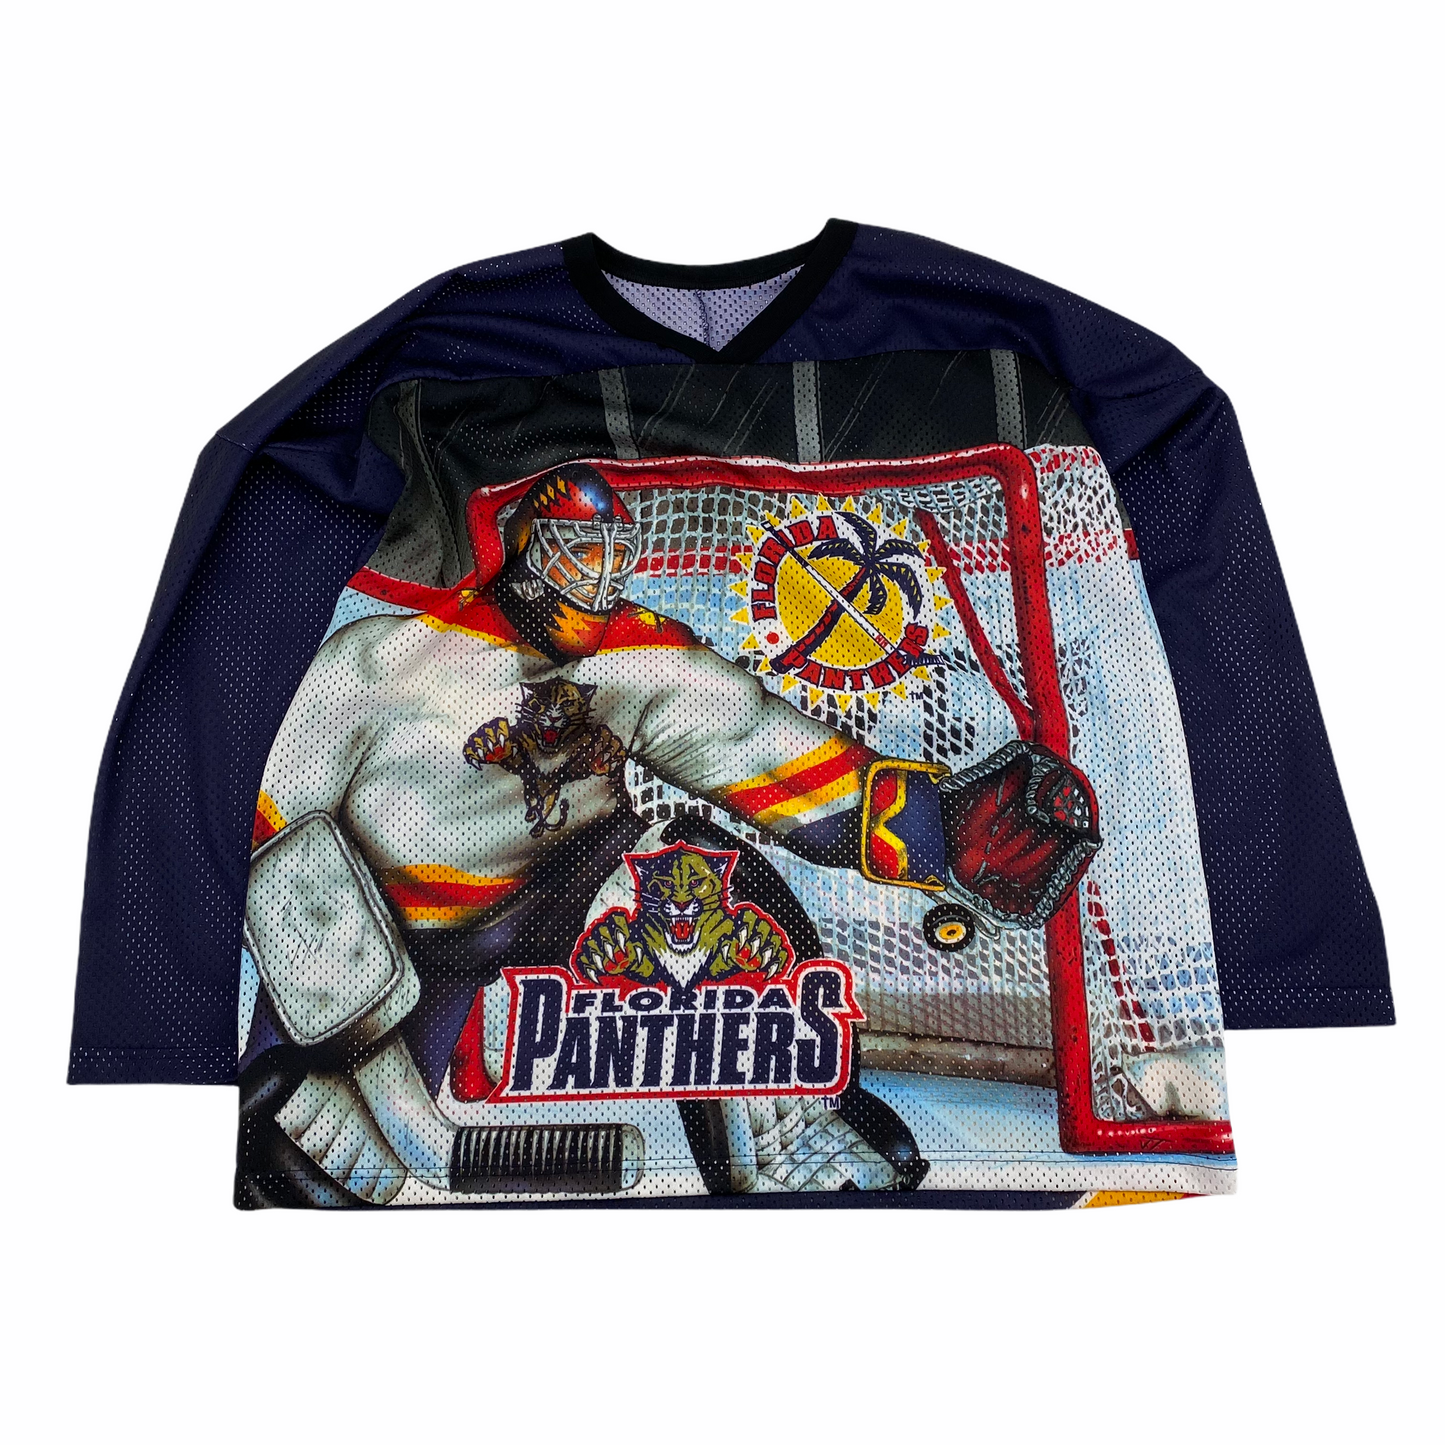 Vintage Florida Panthers Sweatshirt 